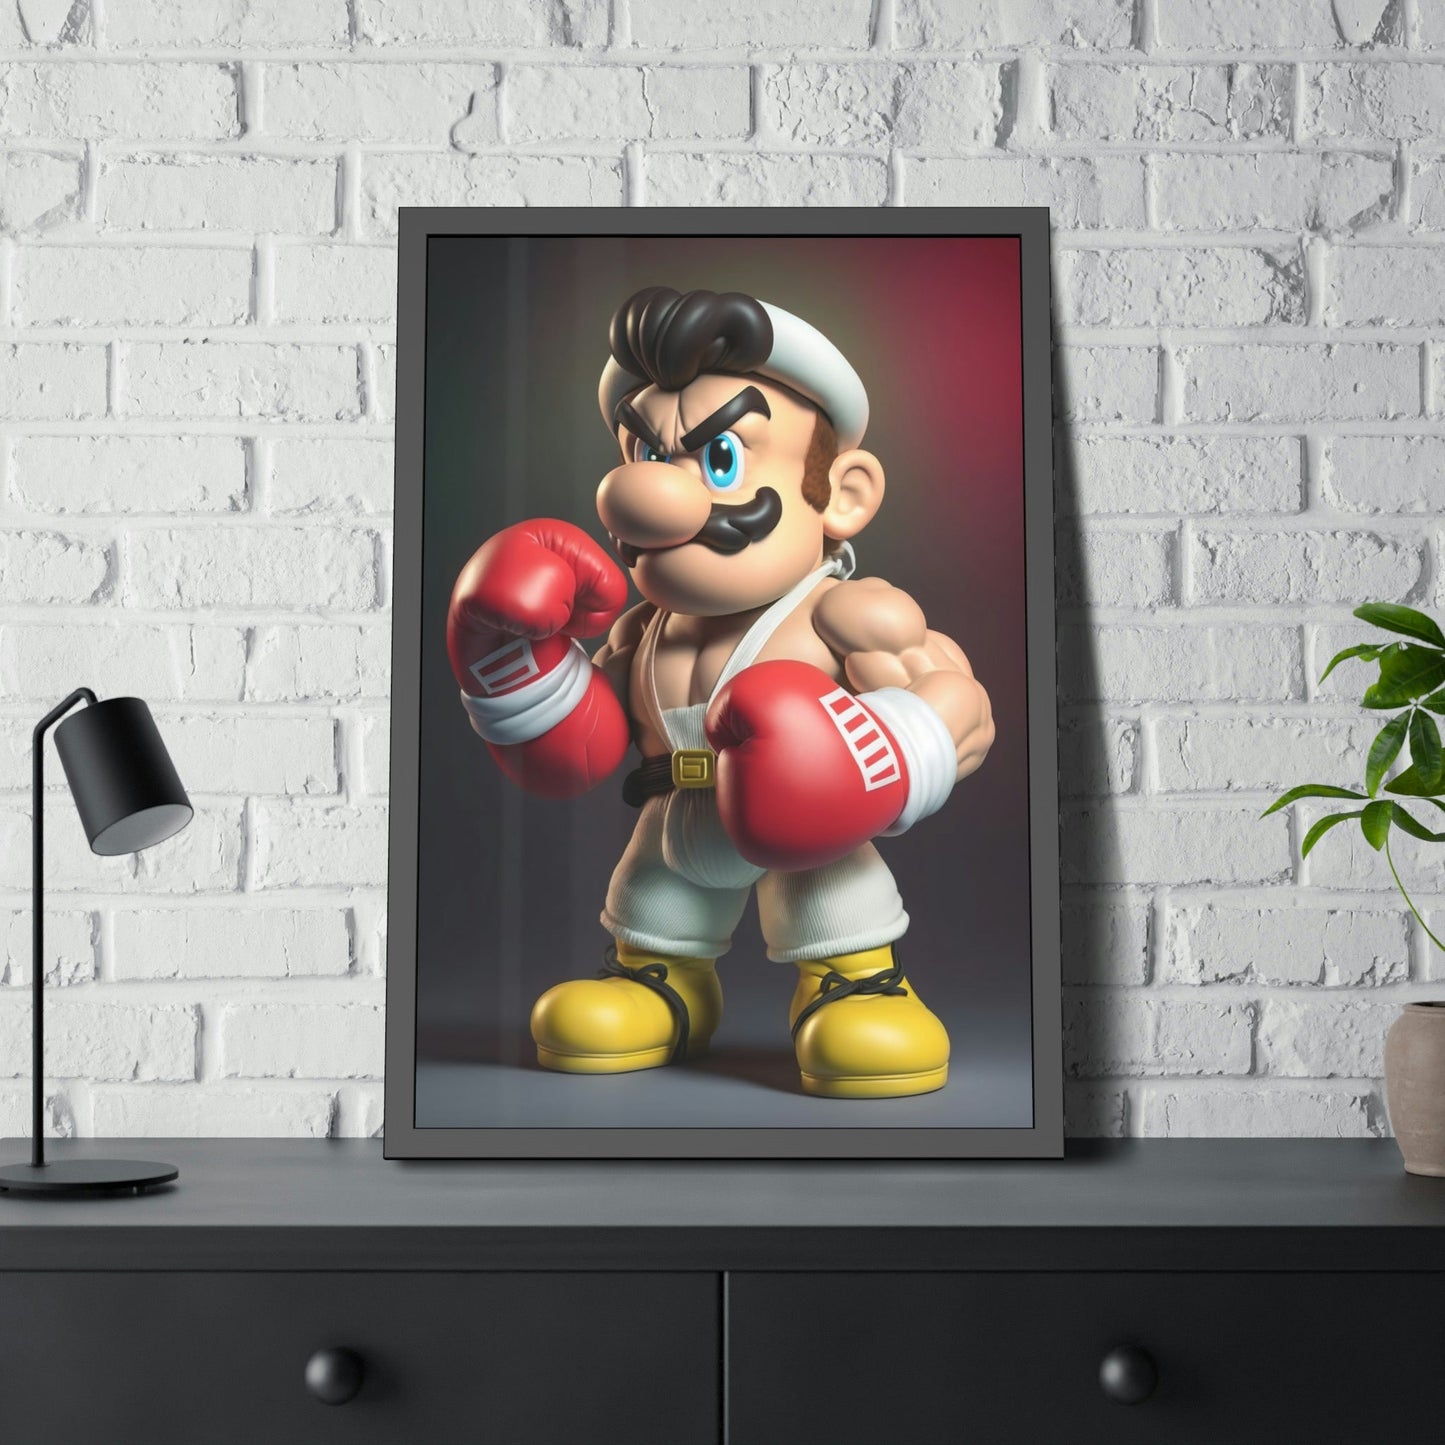 Mario's Adventure: A Canvas Journey